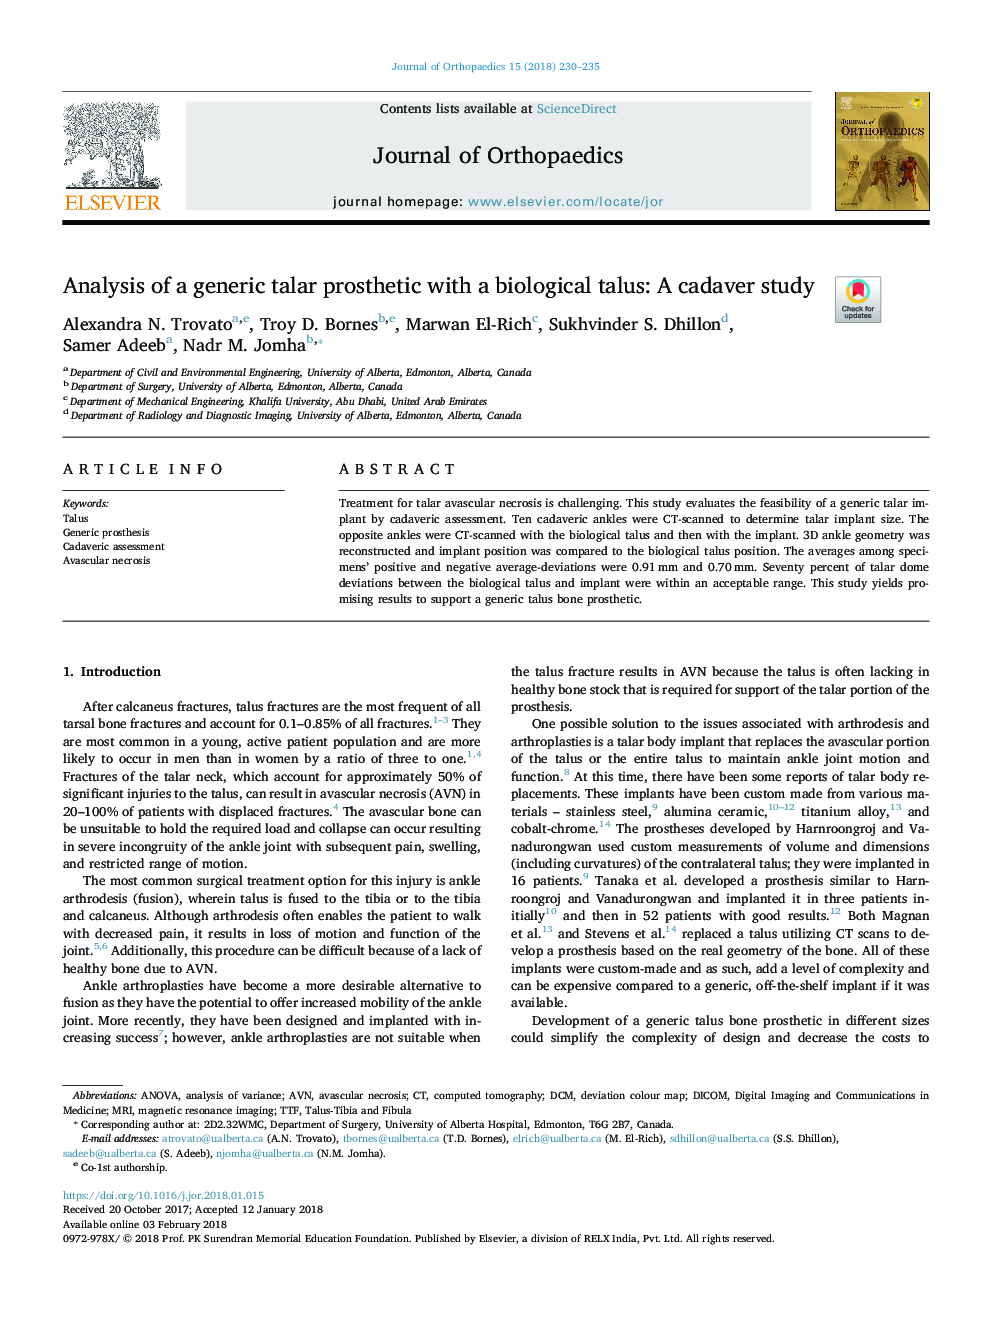 تجزیه و تحلیل یک پروتز لارار عمومی با یک تالک زیستی: یک مطالعه کاداور 